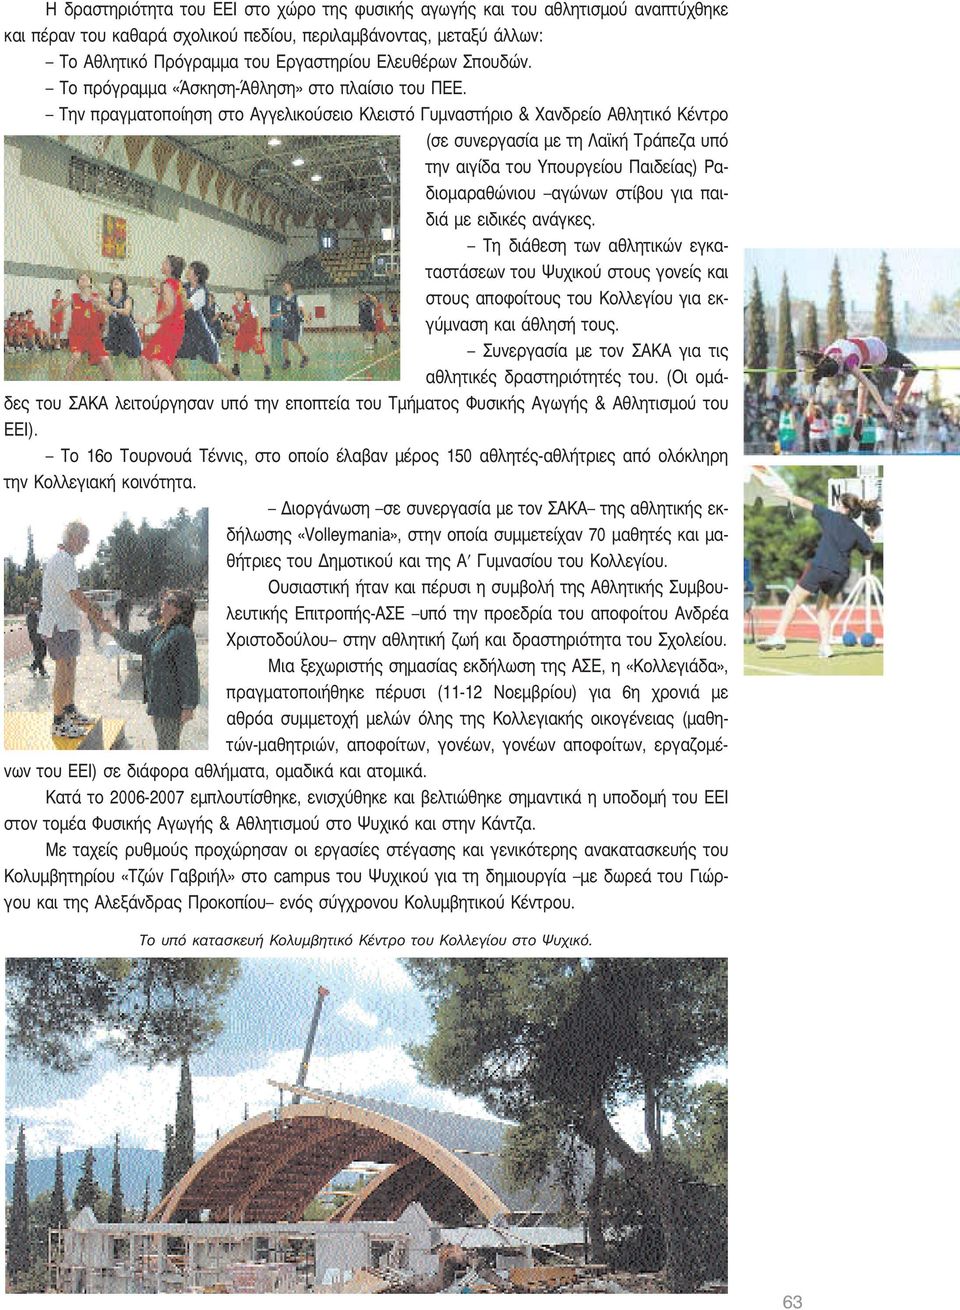 Την πραγματοποίηση στο Αγγελικούσειο Κλειστό Γυμναστήριο & Χανδρείο Αθλητικό Κέντρο (σε συνεργασία με τη Λαϊκή Τράπεζα υπό την αιγίδα του Υπουργείου Παιδείας) Ραδιομαραθώνιου αγώνων στίβου για παιδιά